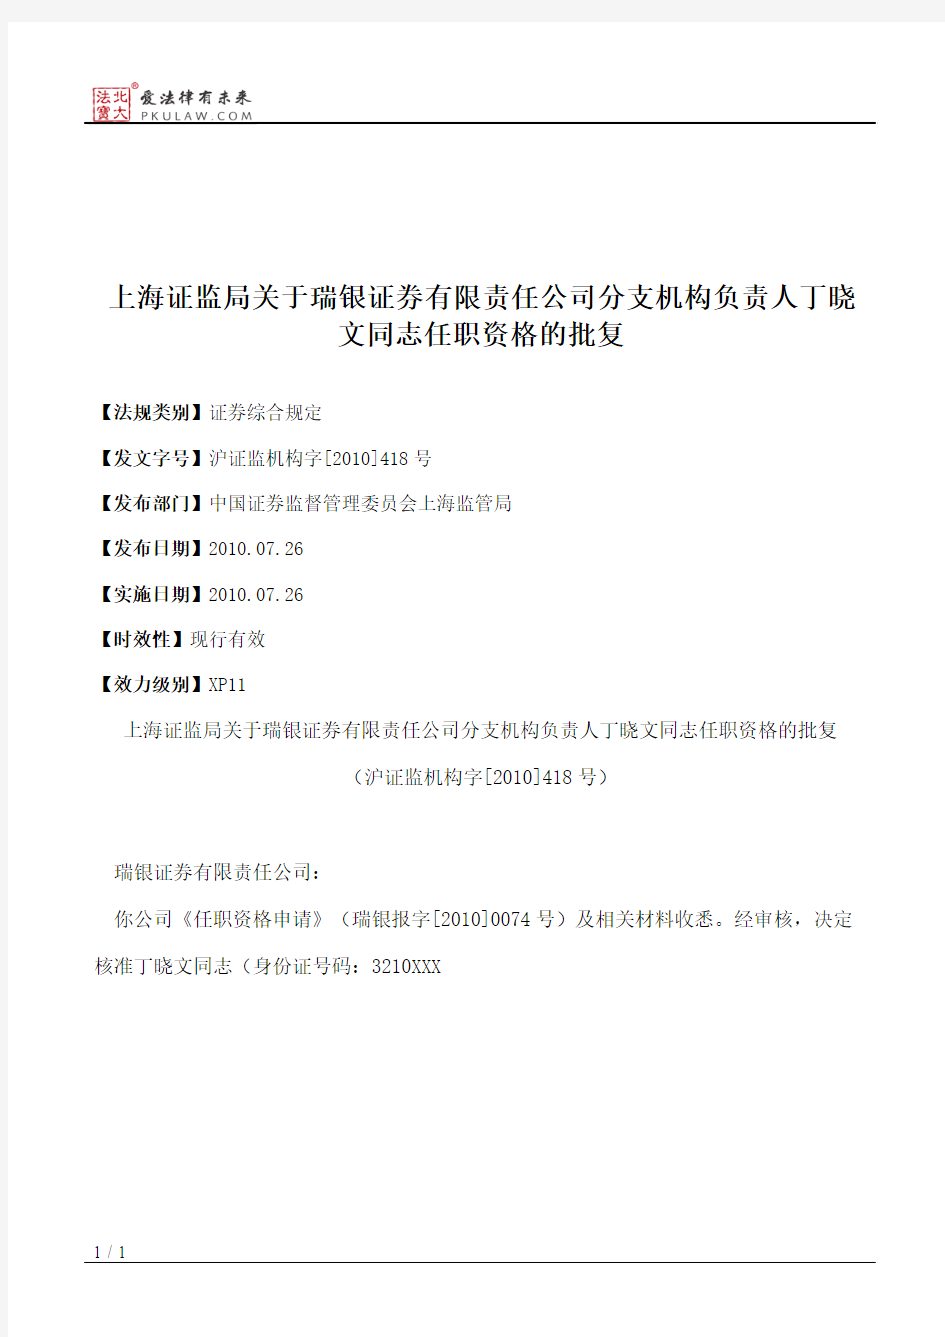 上海证监局关于瑞银证券有限责任公司分支机构负责人丁晓文同志任